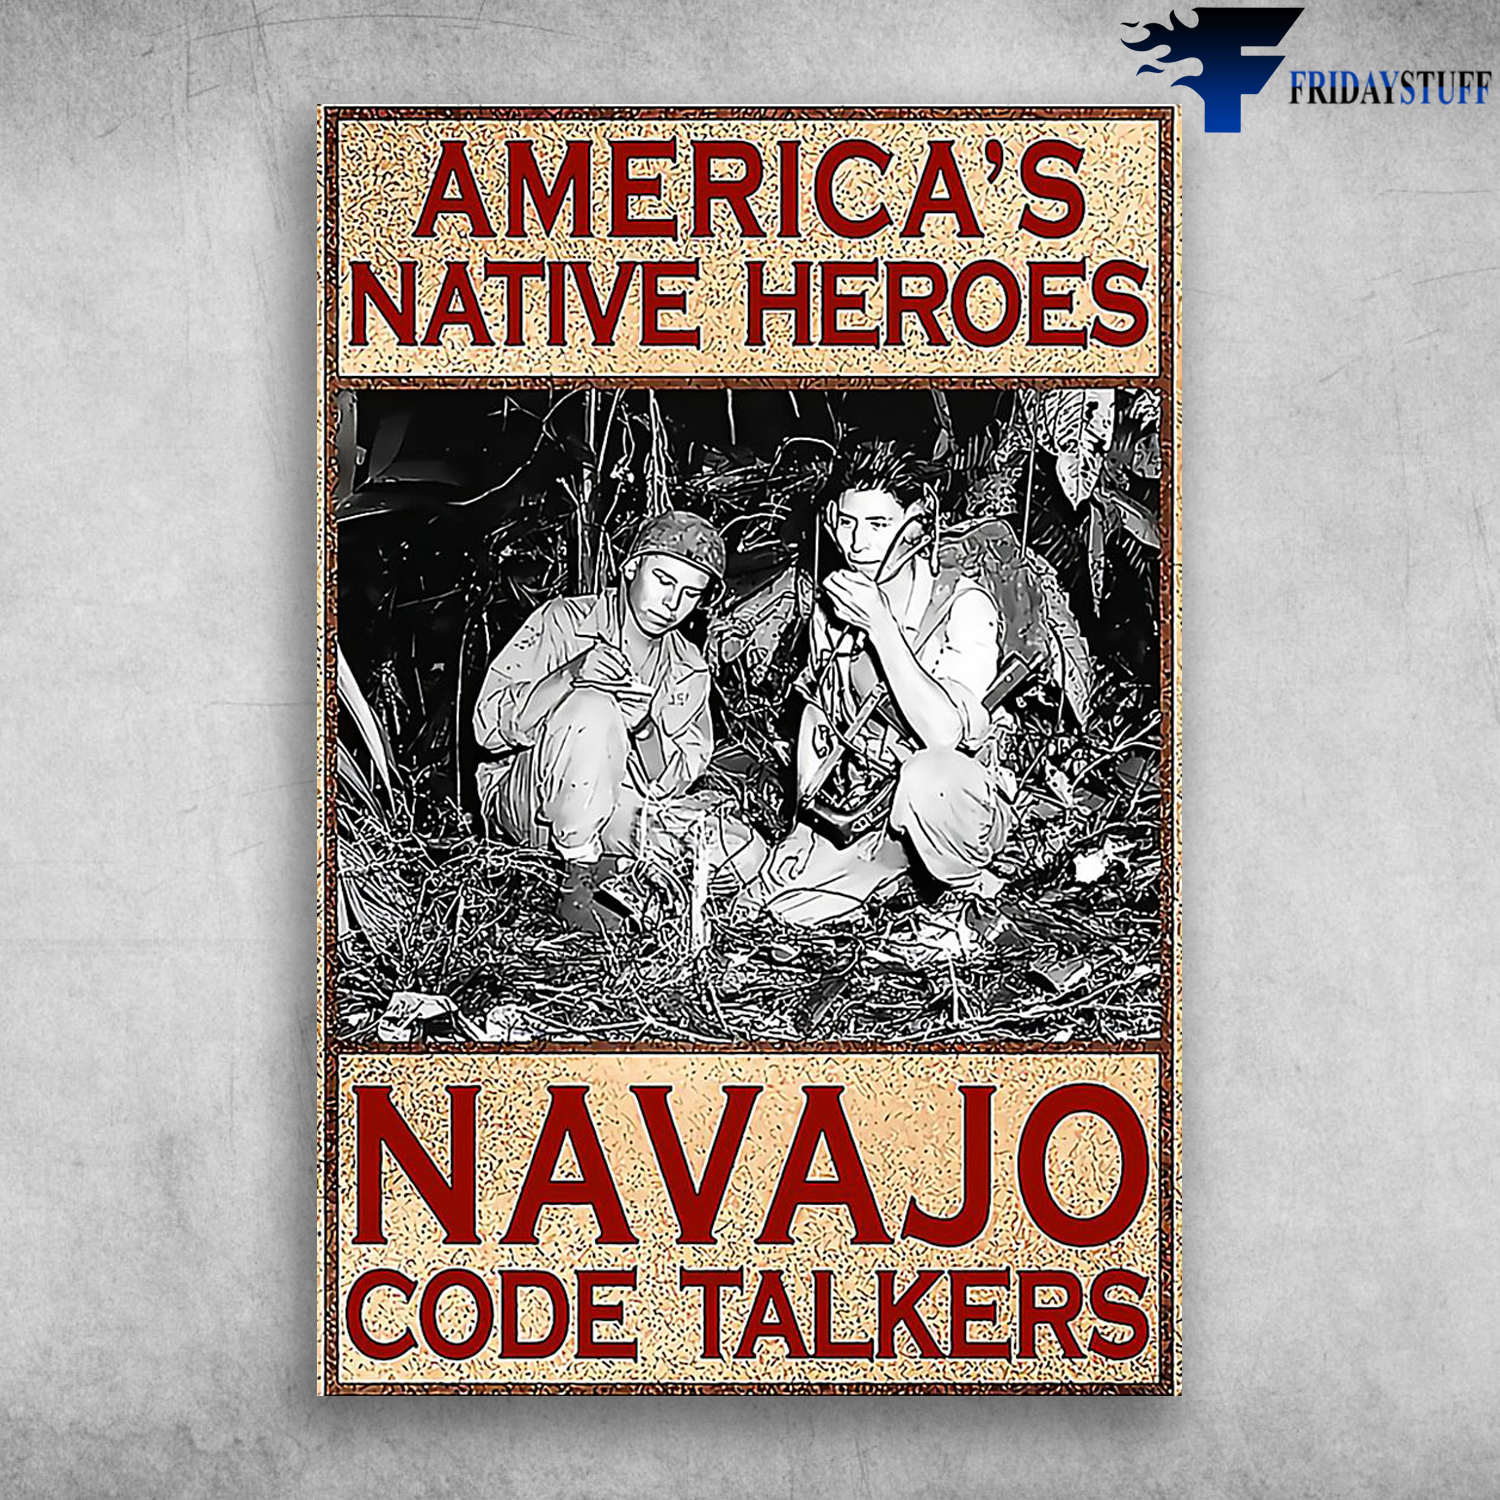 Navajo-America's Native Heroes Navajo Code Talkers